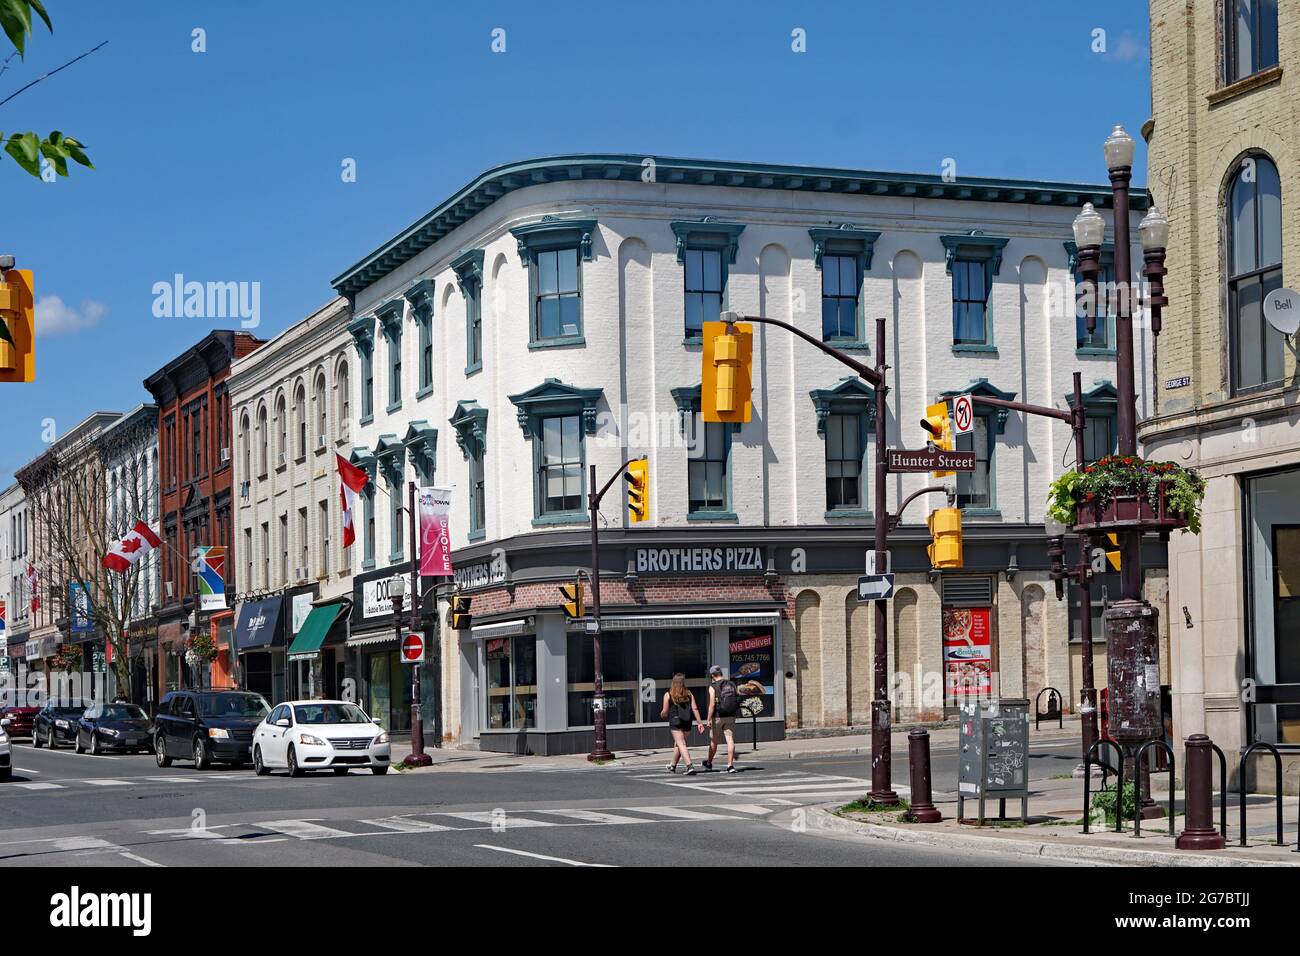 Peterborough, Ontario, Canada - rue principale du centre-ville bien préservée avec des édifices commerciaux du XIXe siècle Banque D'Images